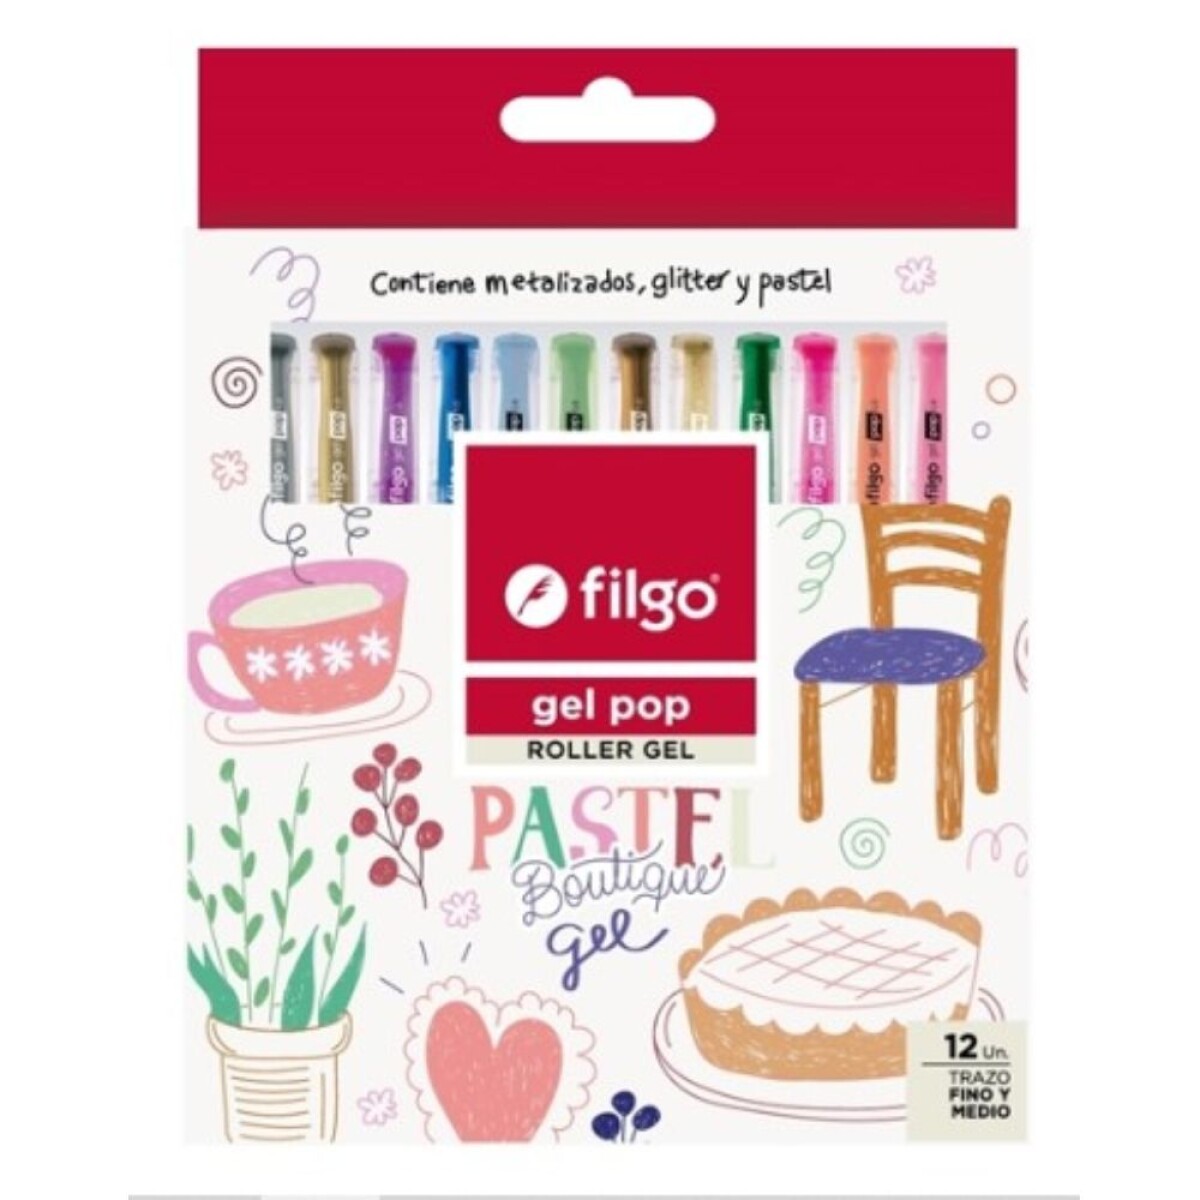 Filgo Roller Gel Pop- Estuche 12 pastel Boutique 